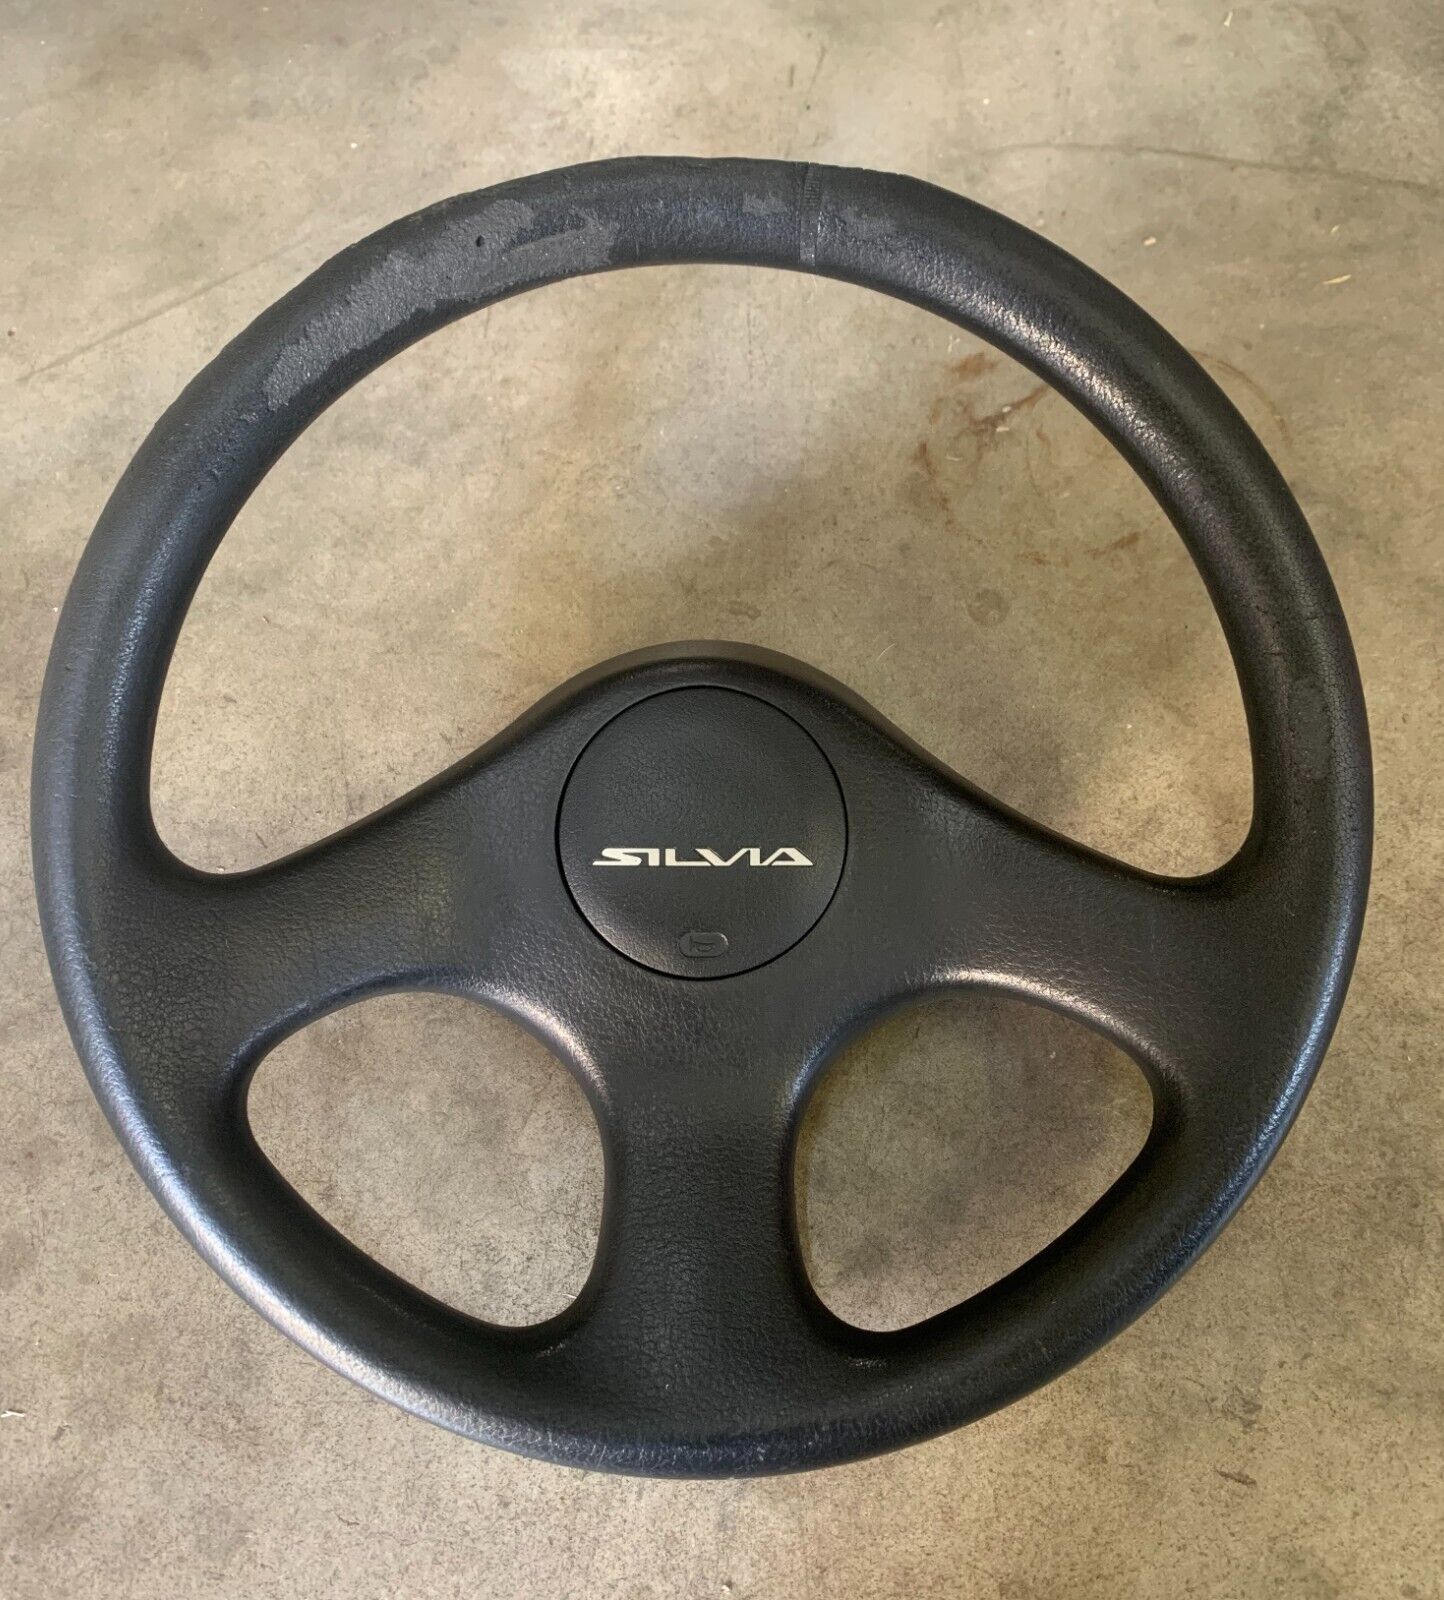 S13 Steering Wheel - 1989 Nissan Silvia - Genuine - JDM - Used